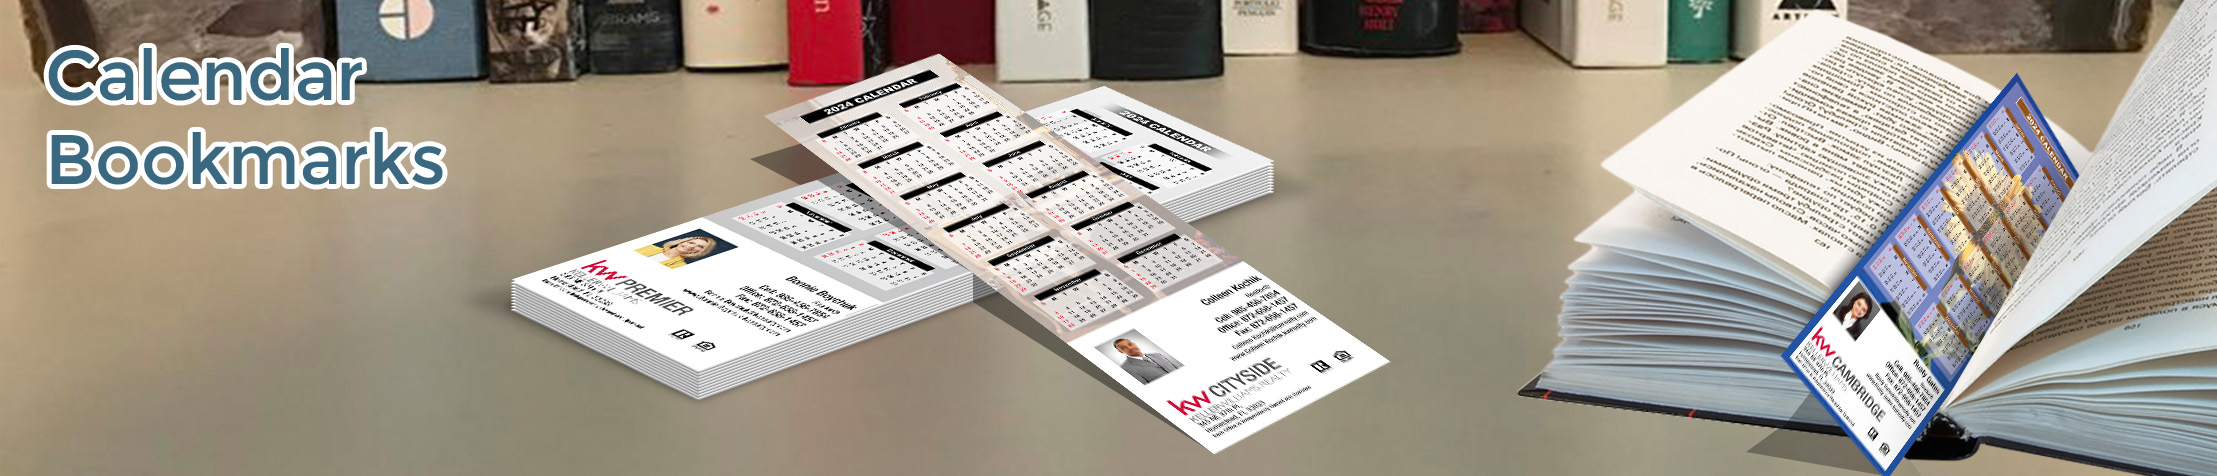 Keller Williams Real Estate Calendar Bookmarks - KW approved vendor 2019 calendars printed on book markers | BestPrintBuy.com